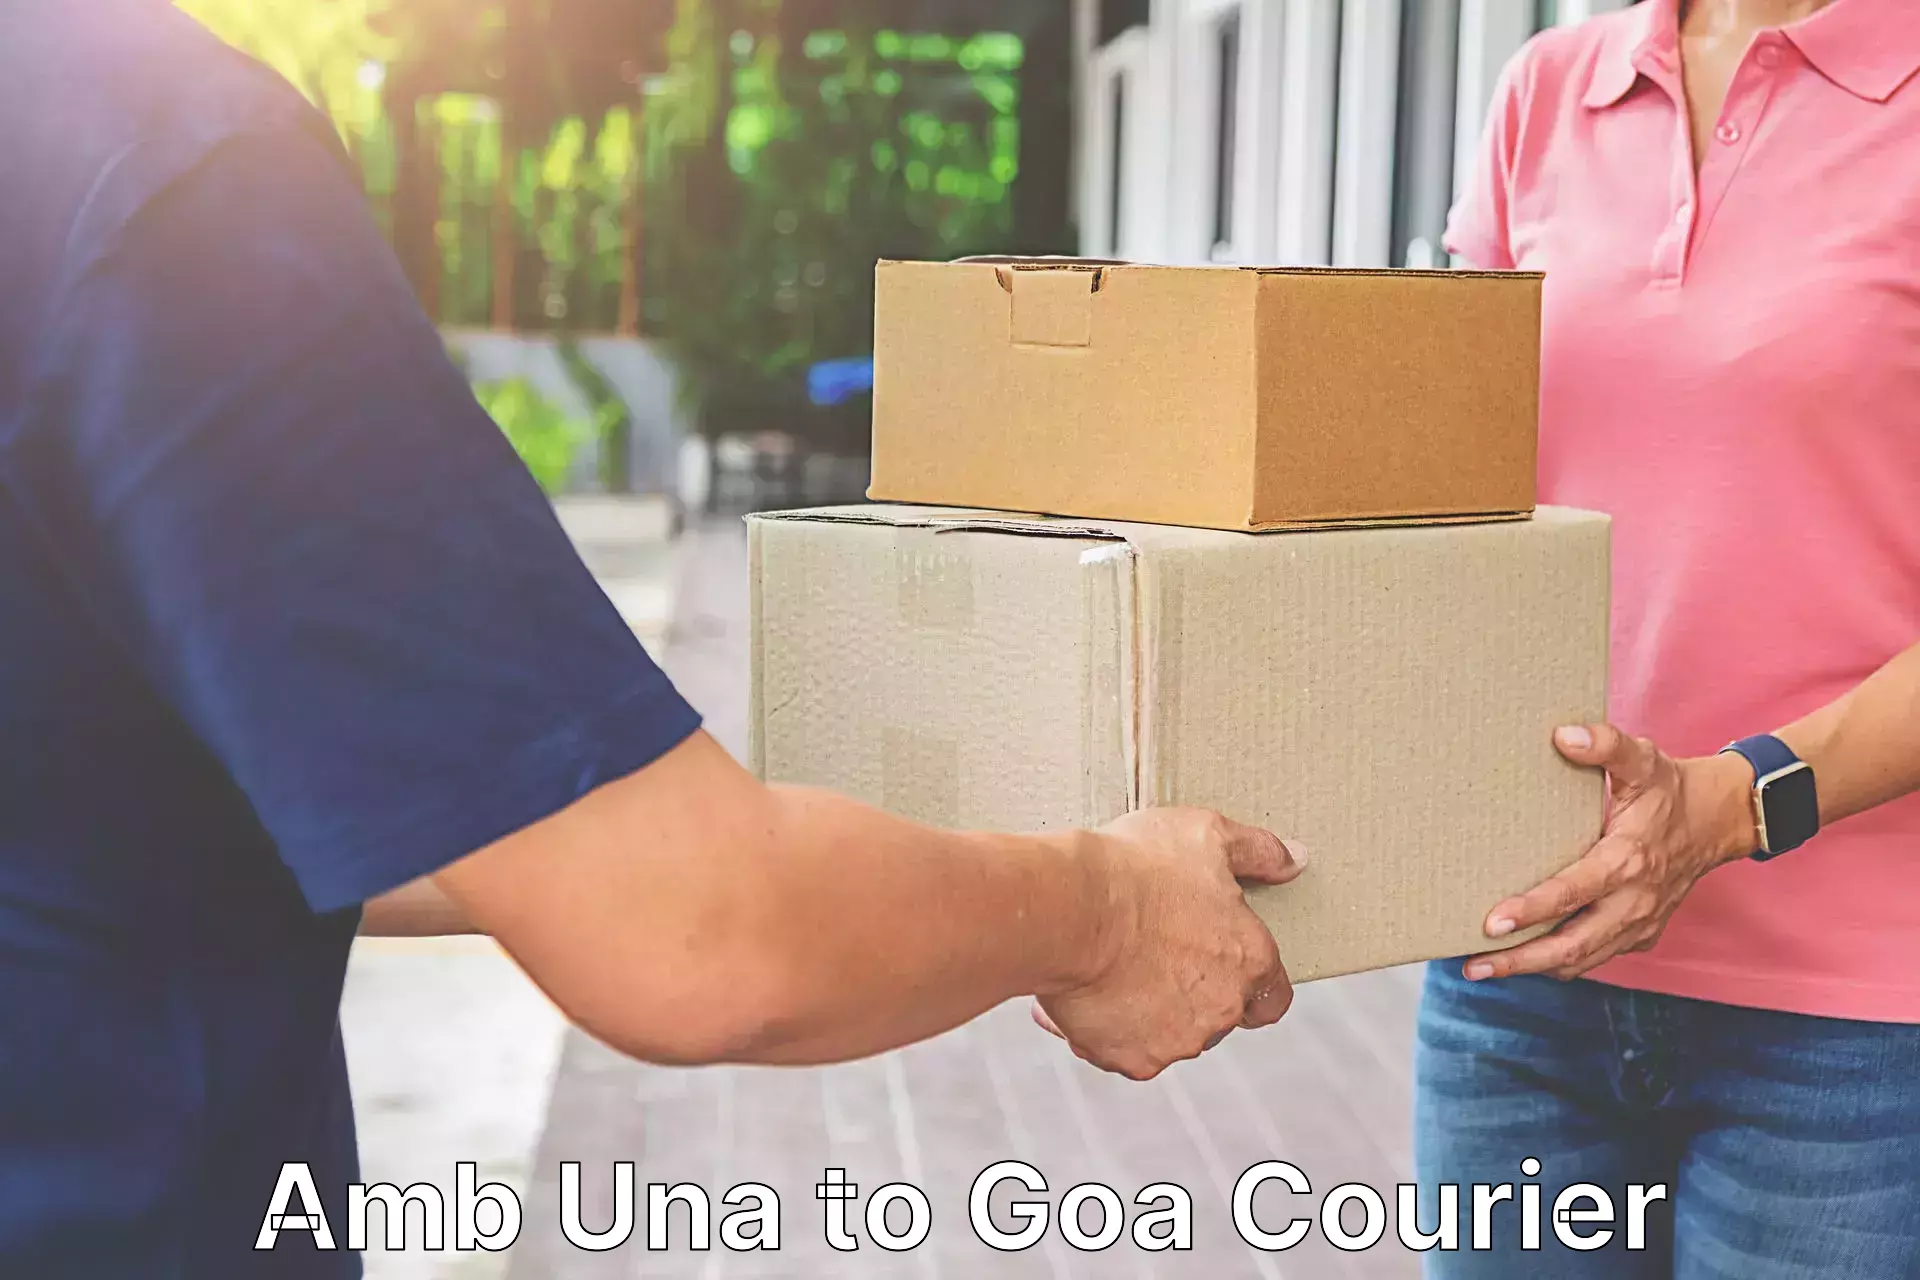 Seamless shipping service Amb Una to Goa University